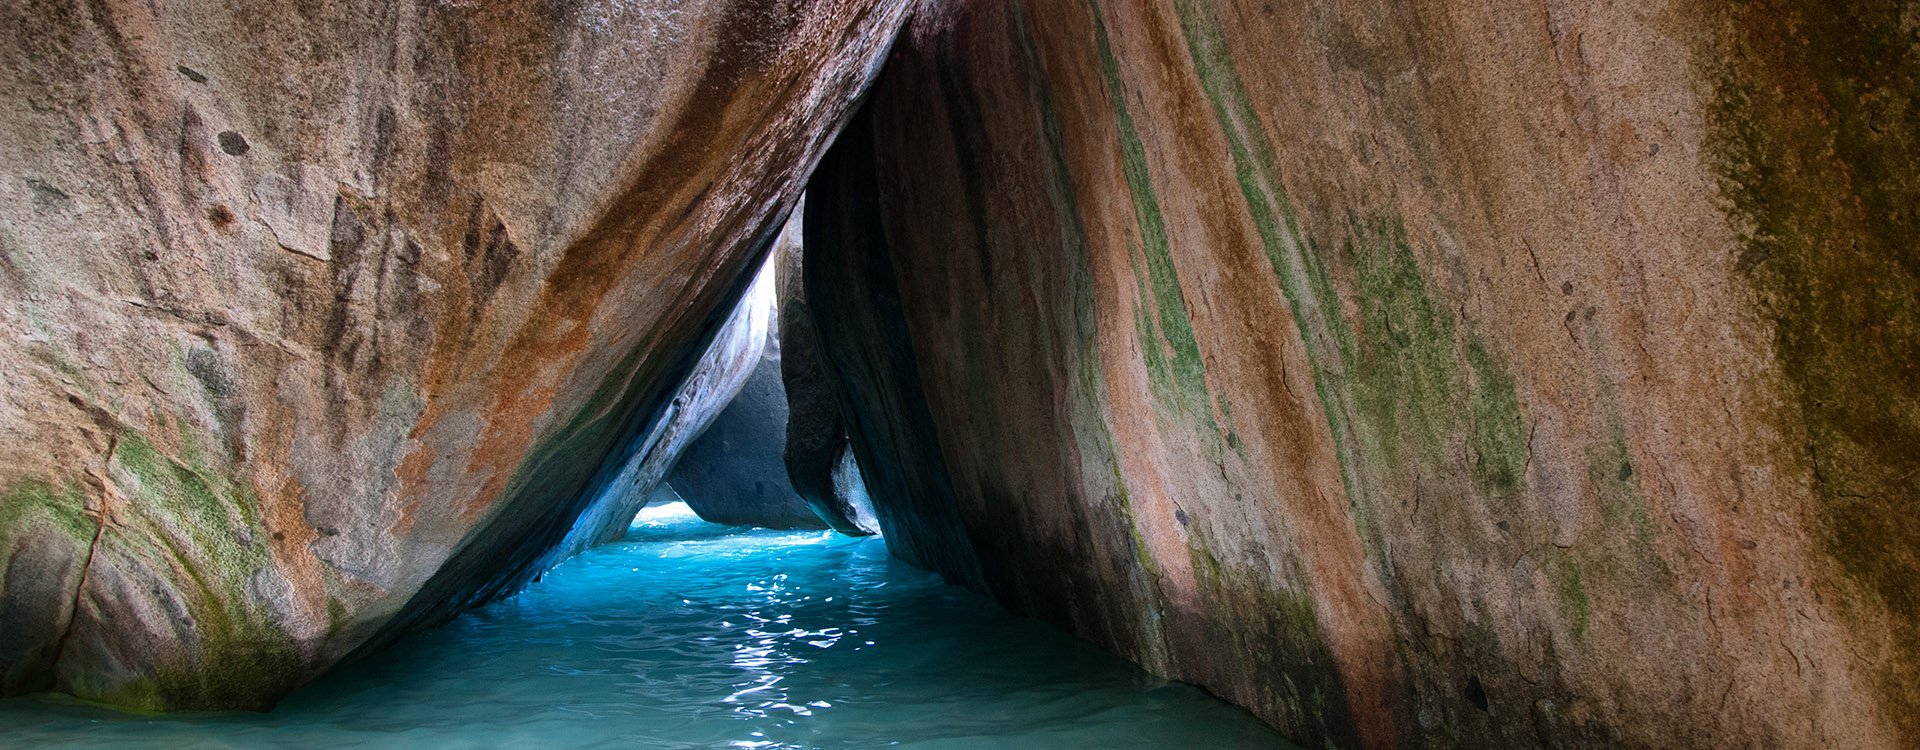 Huge Granite Boulders on Tranquil Turquoise Sea Water in Virgin Gorda Island in Caribbean